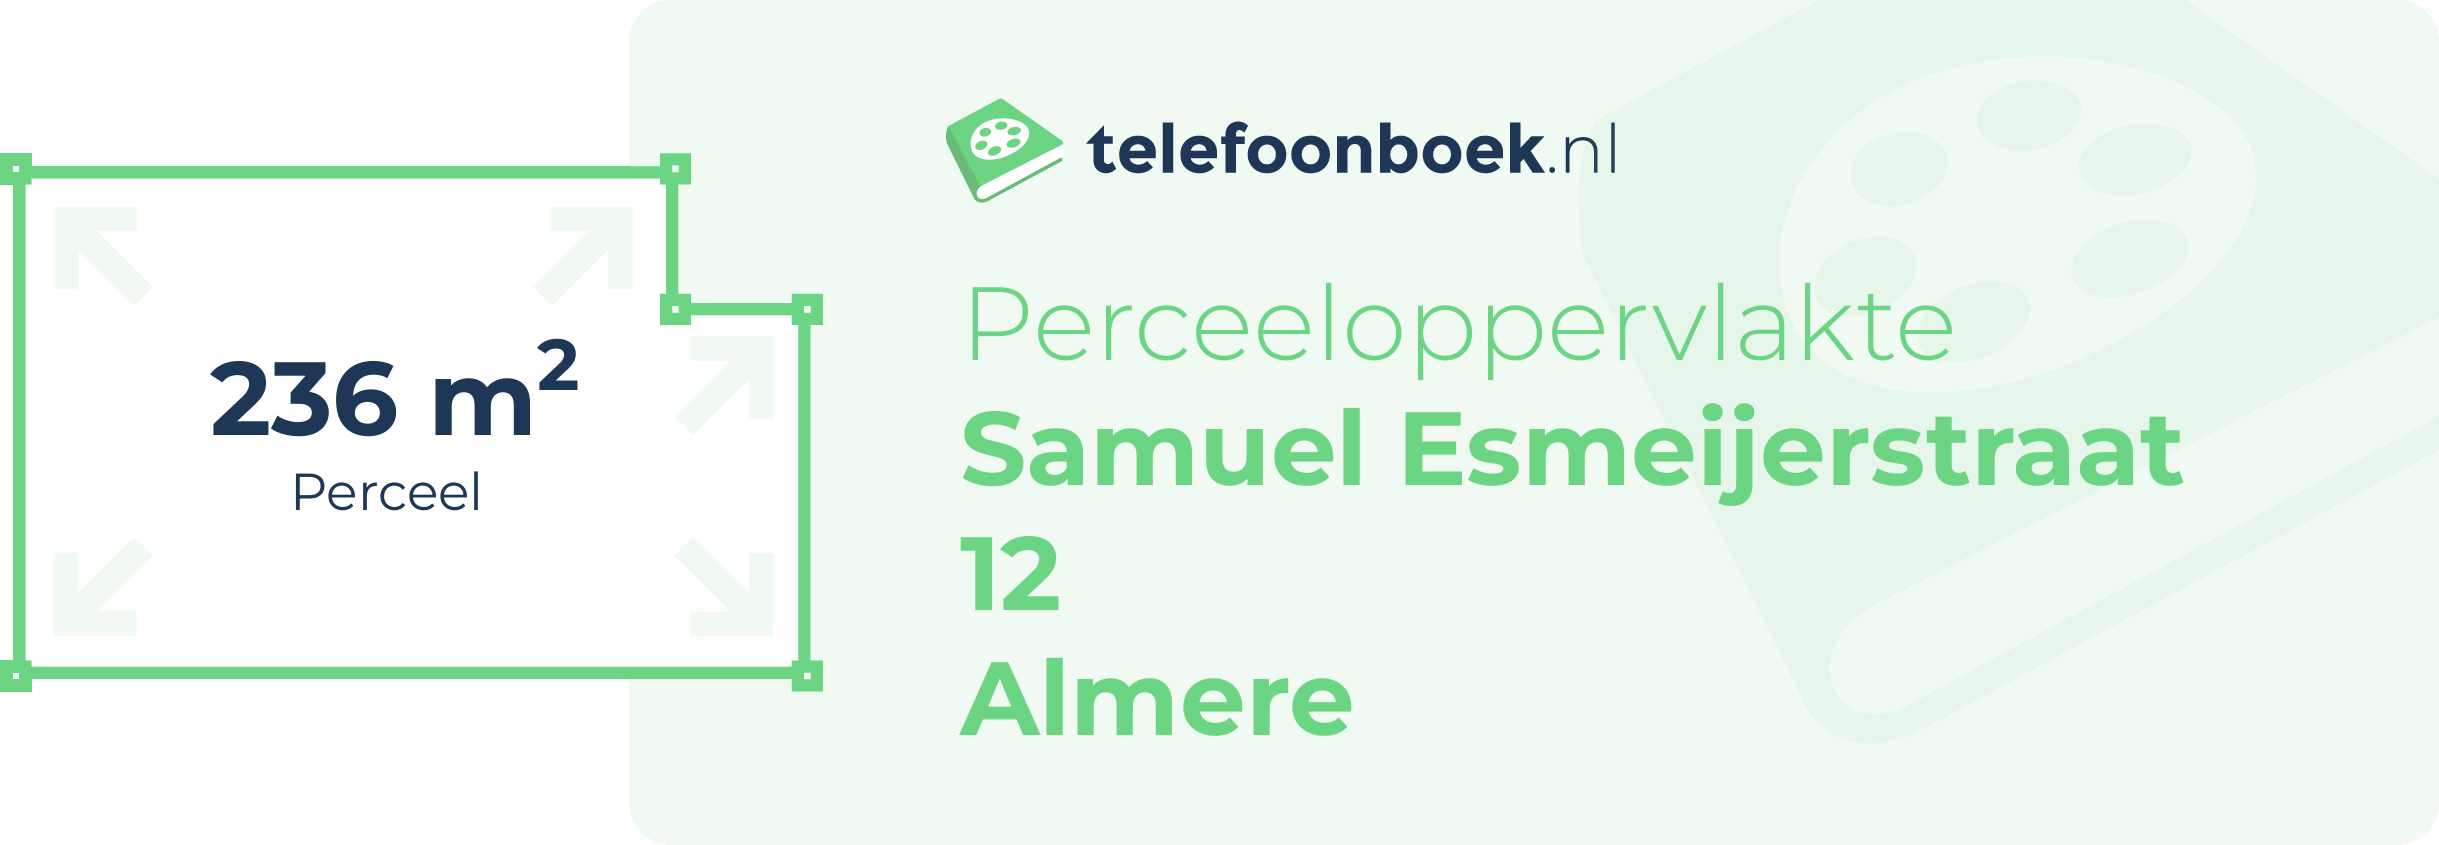 Perceeloppervlakte Samuel Esmeijerstraat 12 Almere